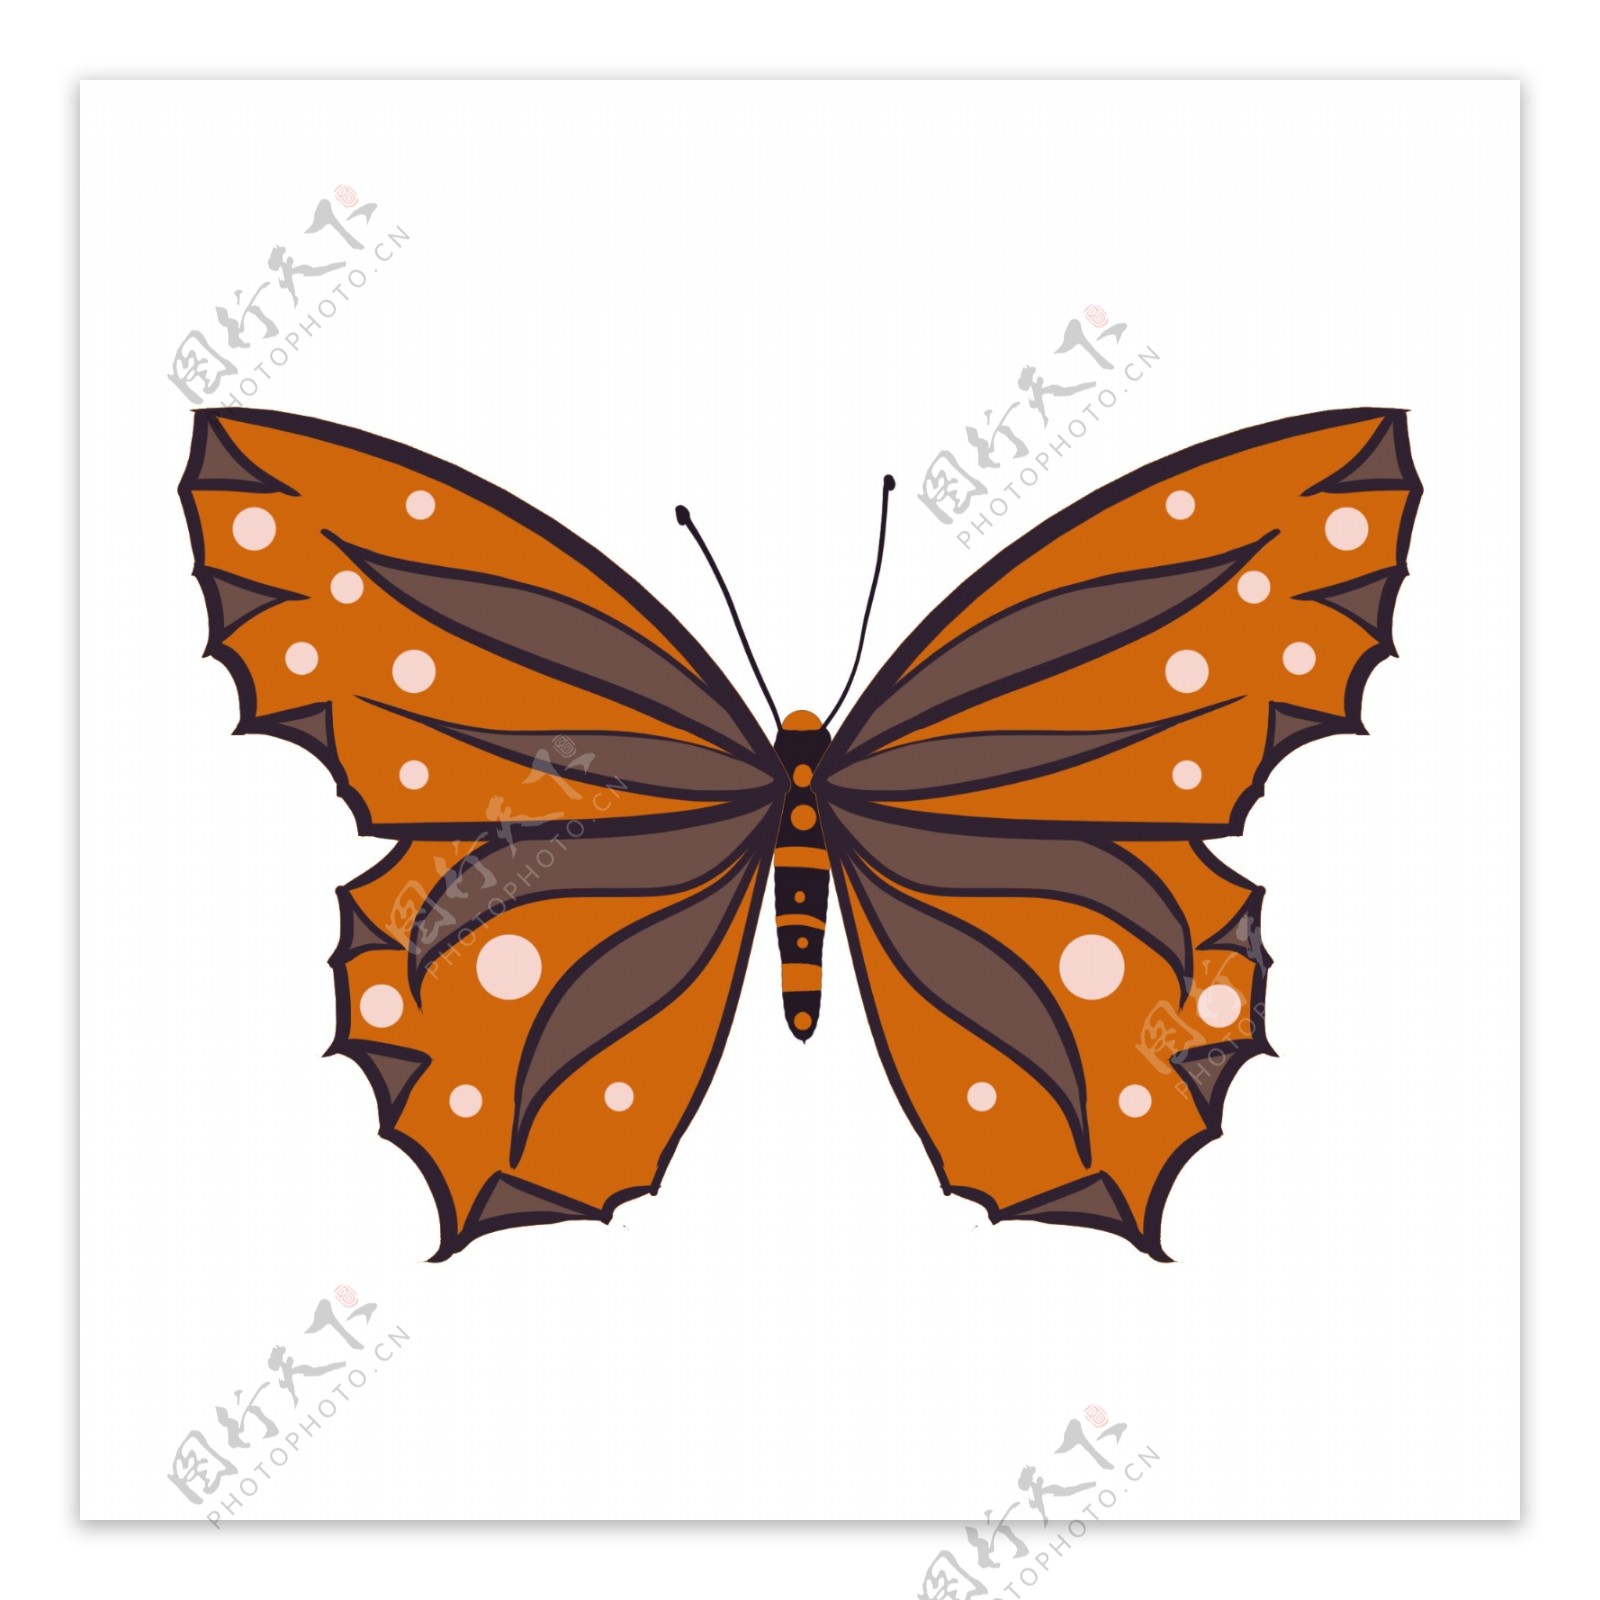 棕橙色蝴蝶